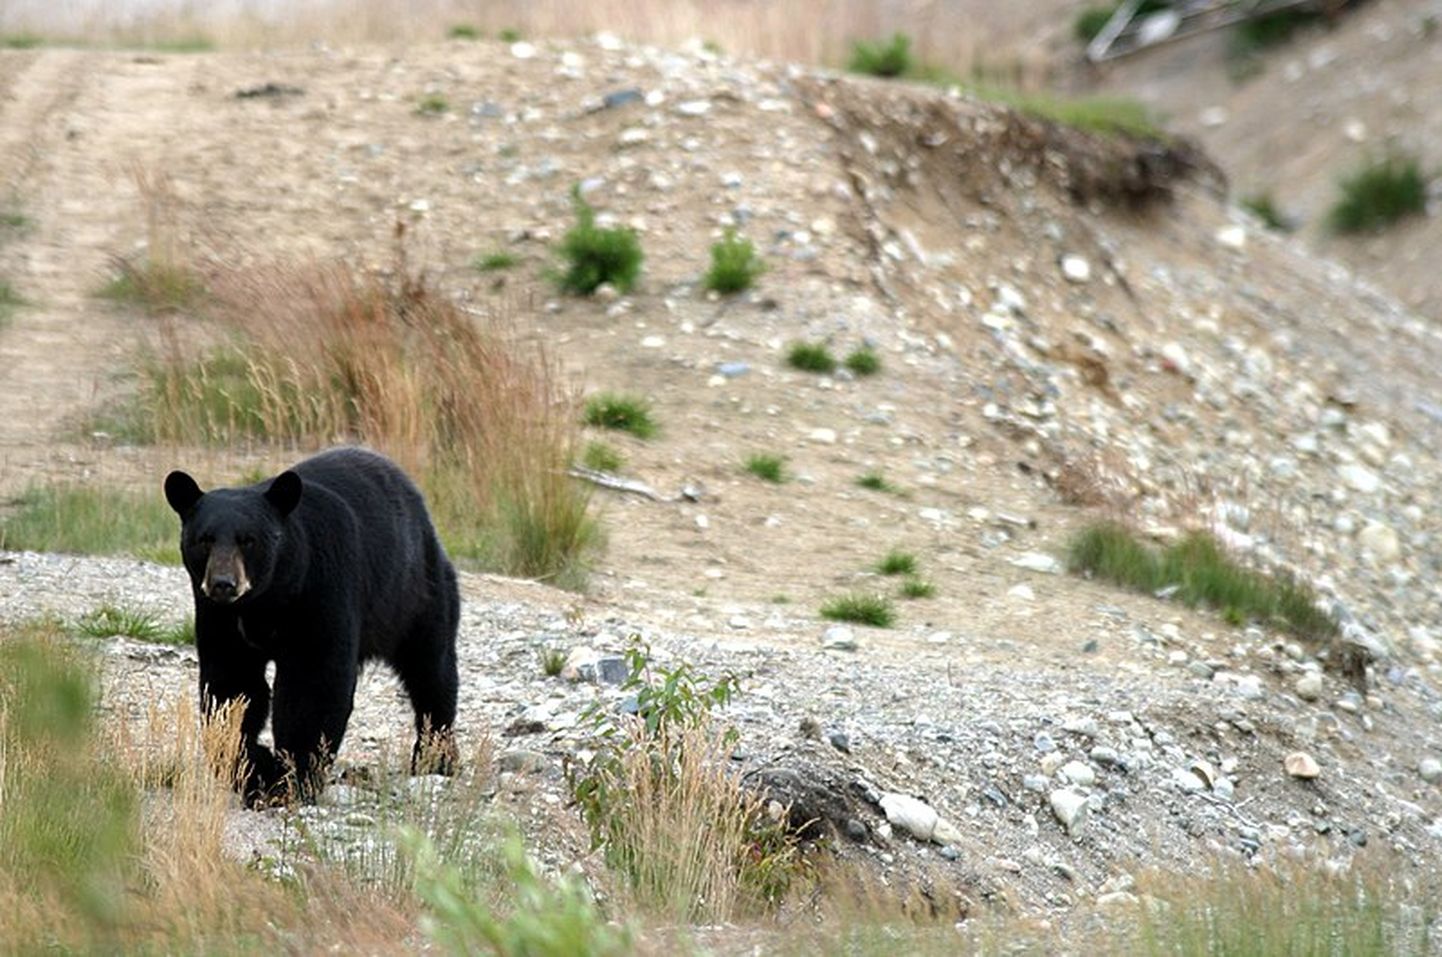 ASV nacionālajā parkā lācis uzbrūk vietējiem apmeklētājiem